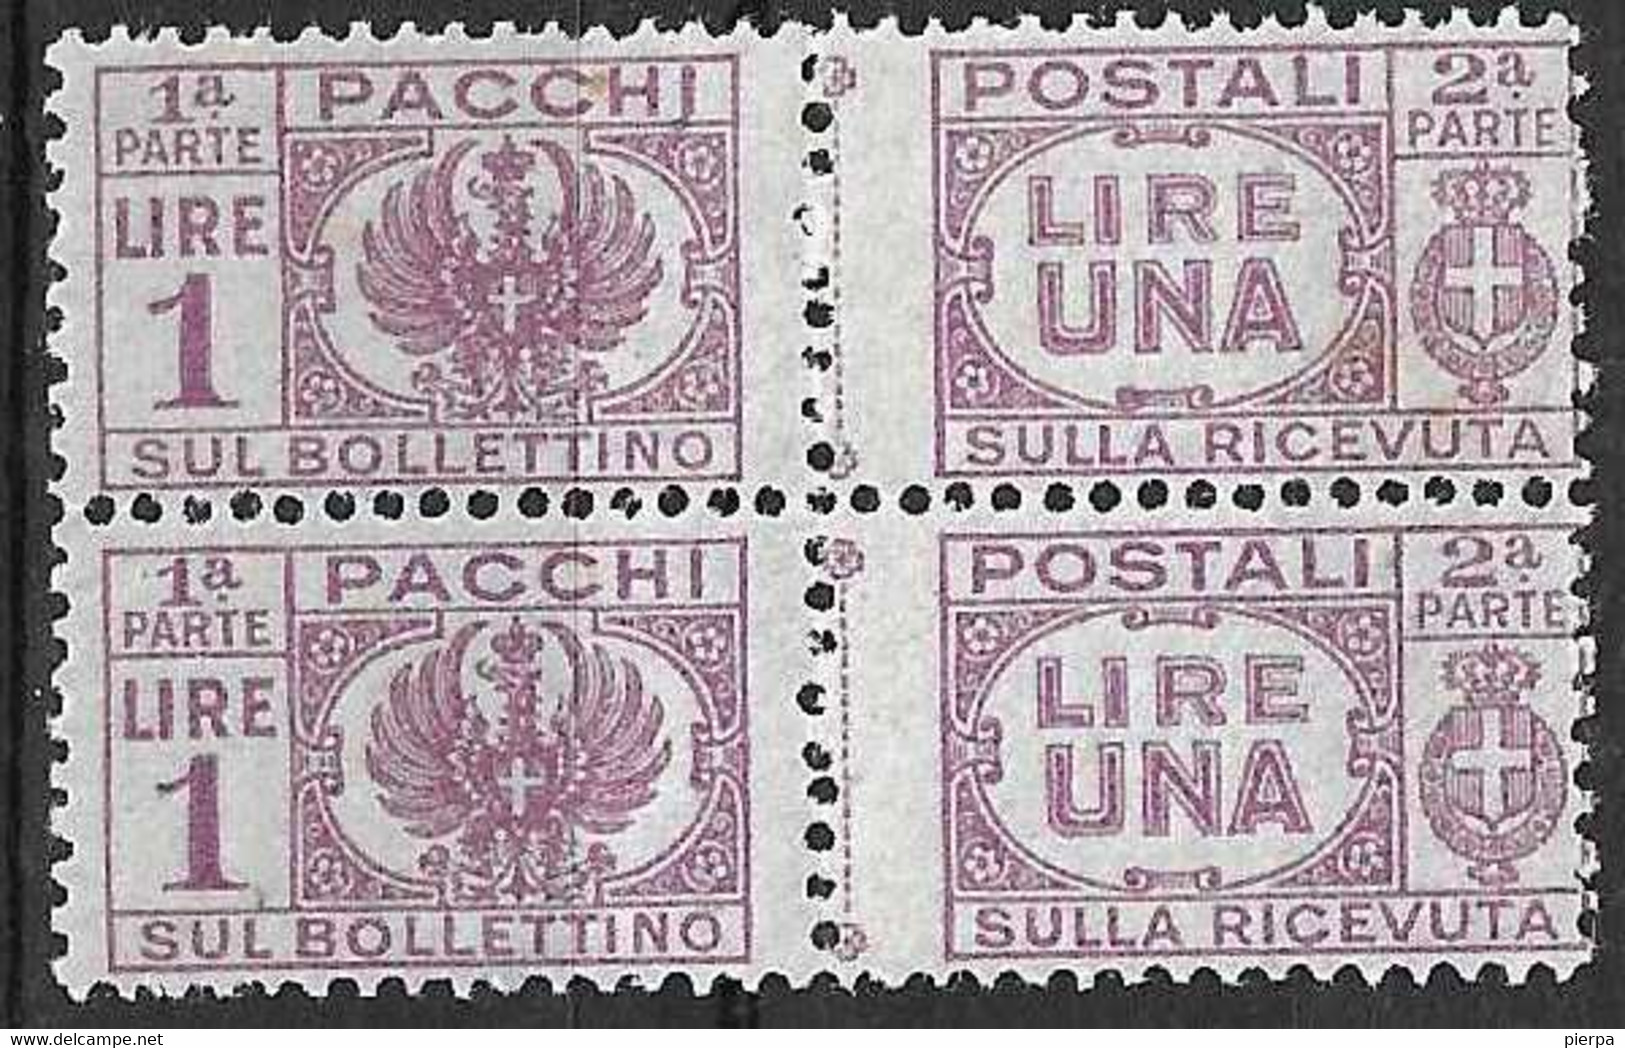 ITALIA - 1946 - PACCHI POSTALI -COPPIA DEL LIRE 1 - FIL CORONA - NUOVO MNH**(SS 60 - YVERT 46 - MICHEL 60) - Postpaketten